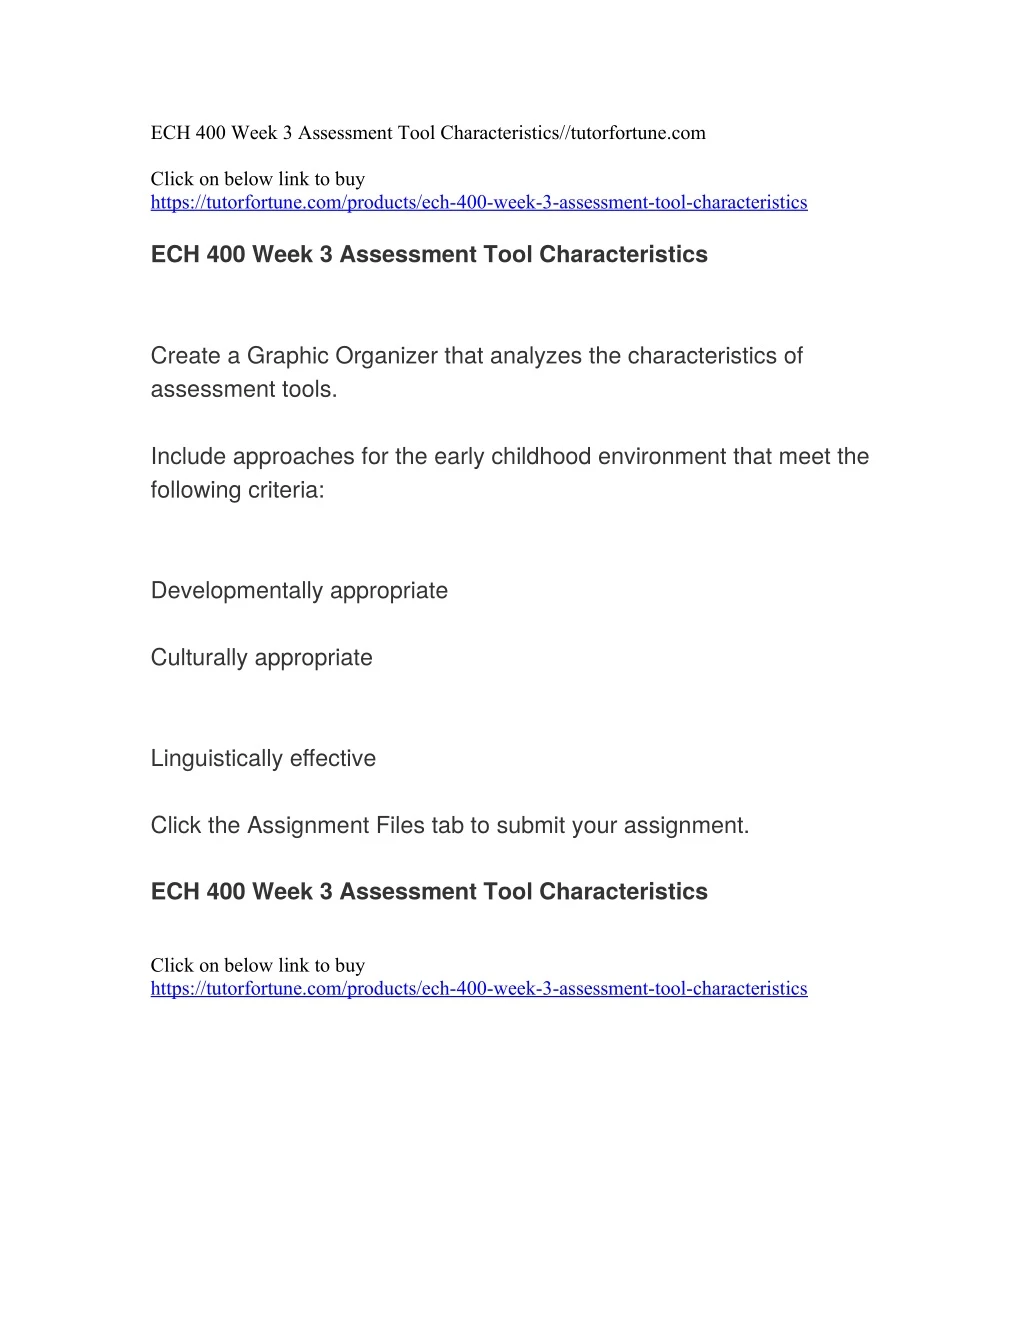 ech 400 week 3 assessment tool characteristics